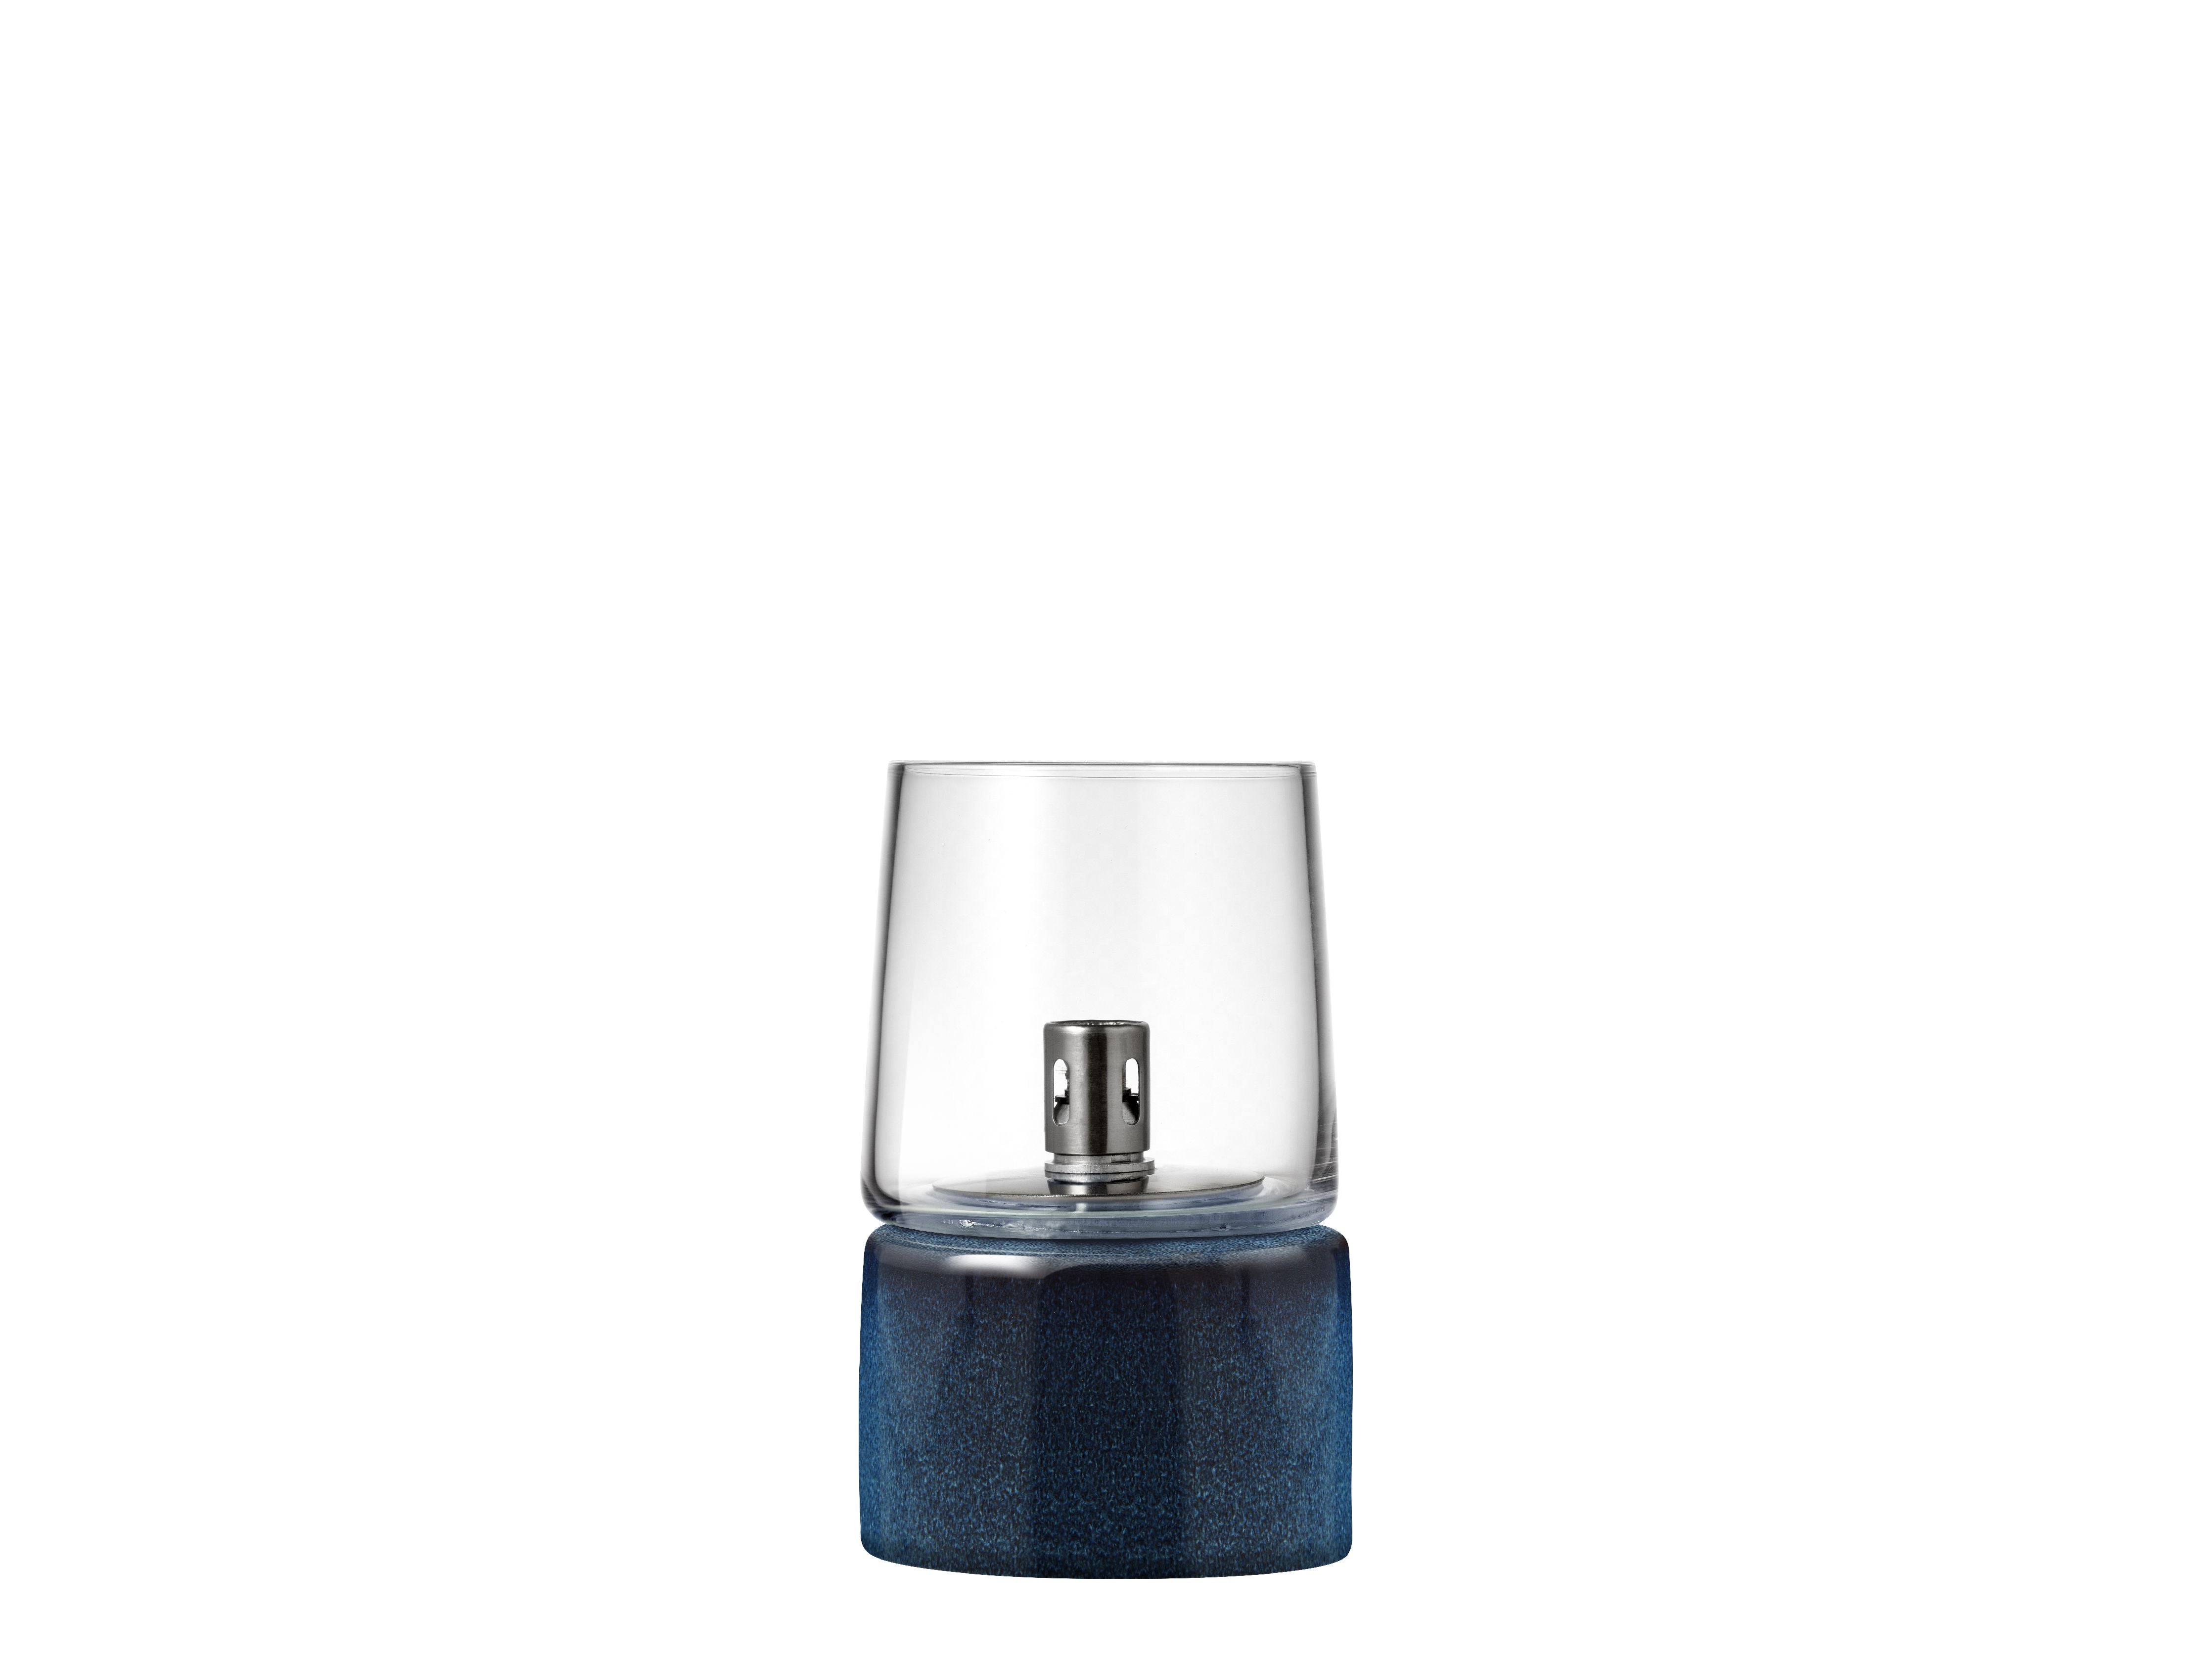 BITZ Gastro Oil Lamp Øxh 8.5x14 cm, blå